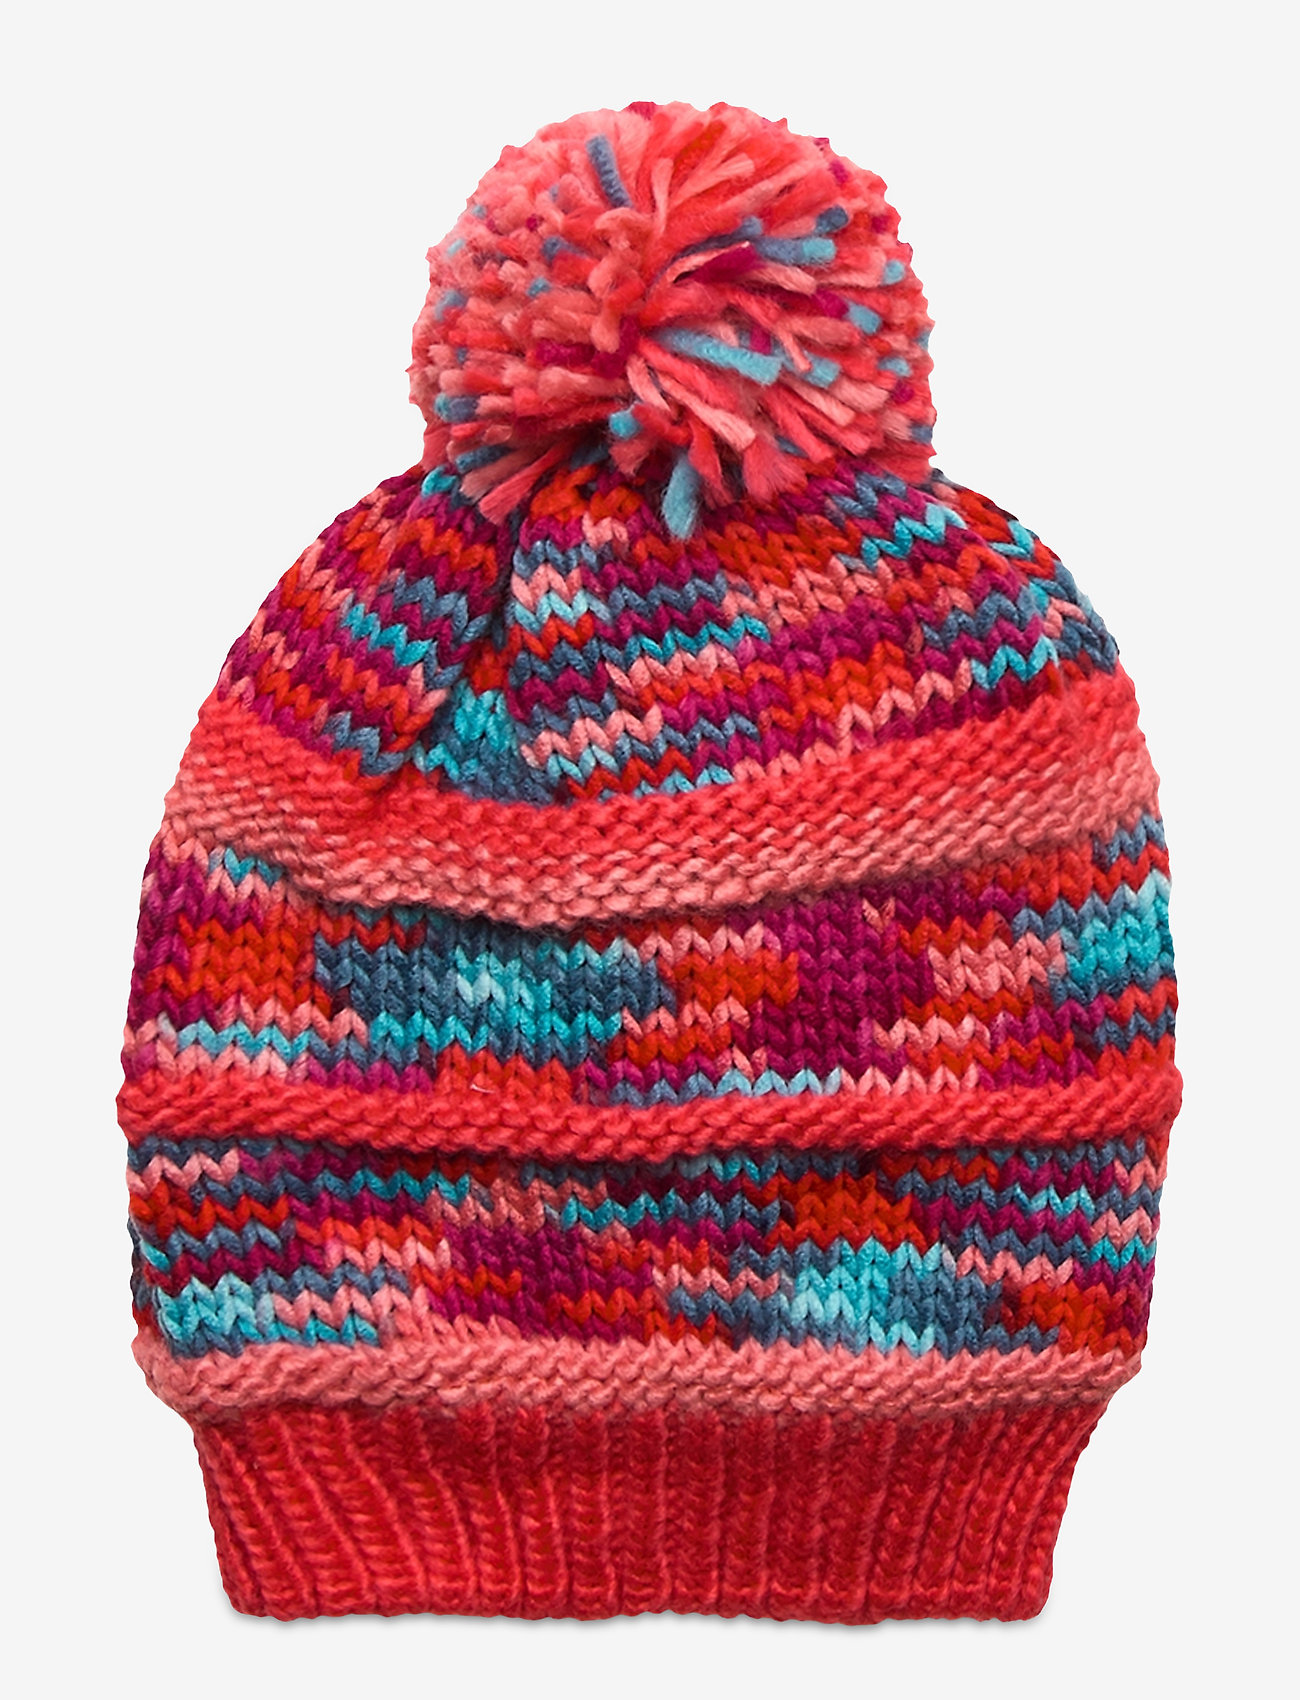 Color Kids - hat - zemākās cenas - coral red - 0